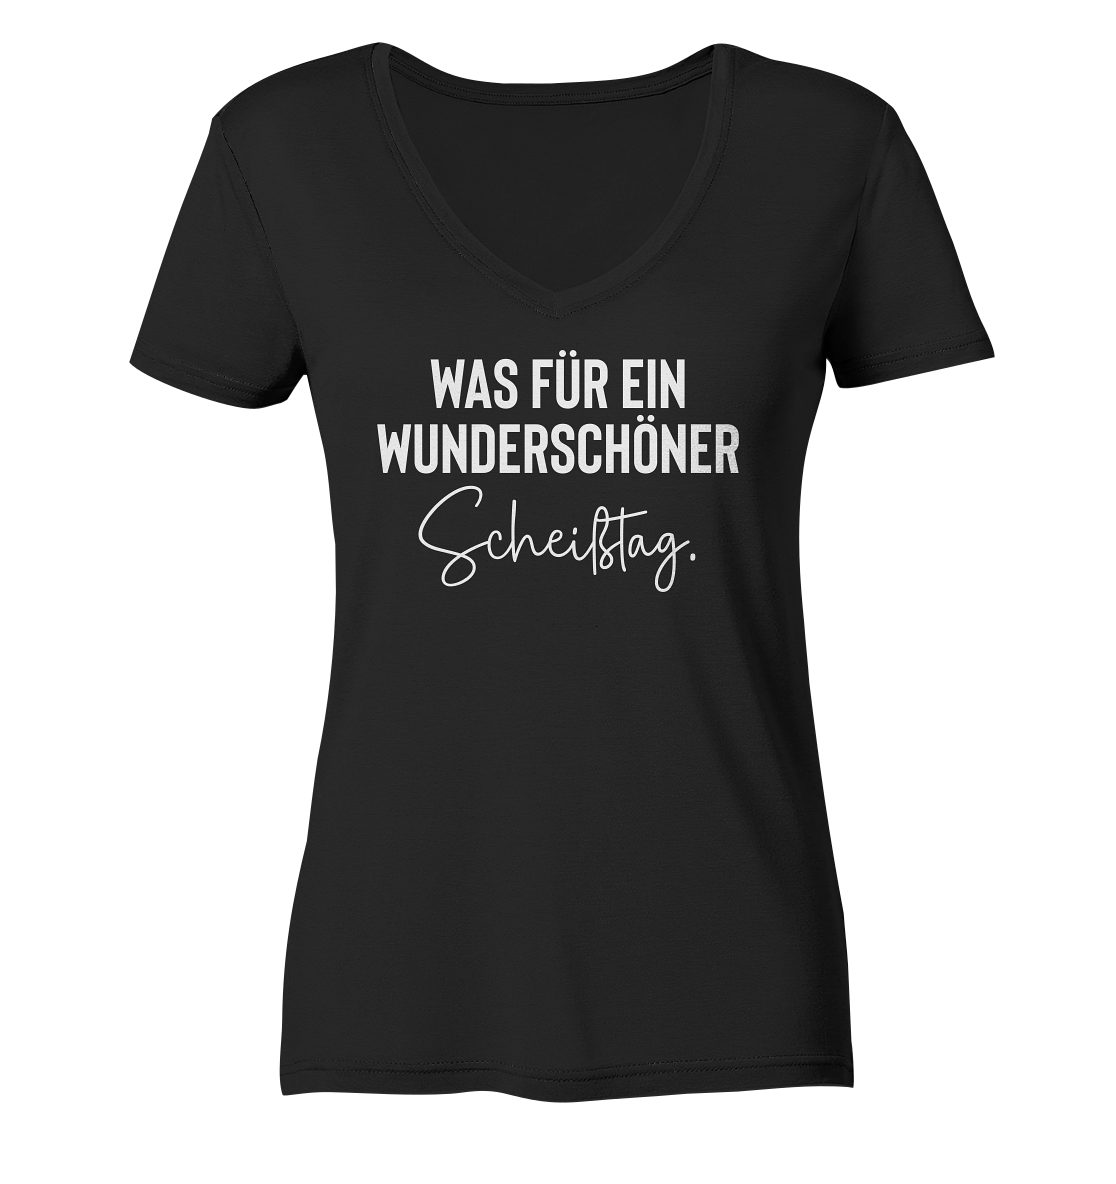 RABUMSEL T-Shirt "Was für ein wunderschöner Scheißtag" - Frauen V-Neck Shirt Bedruckt in Deutschland, Hohe Waschbeständigkeit, Hohe Farbbrillianz